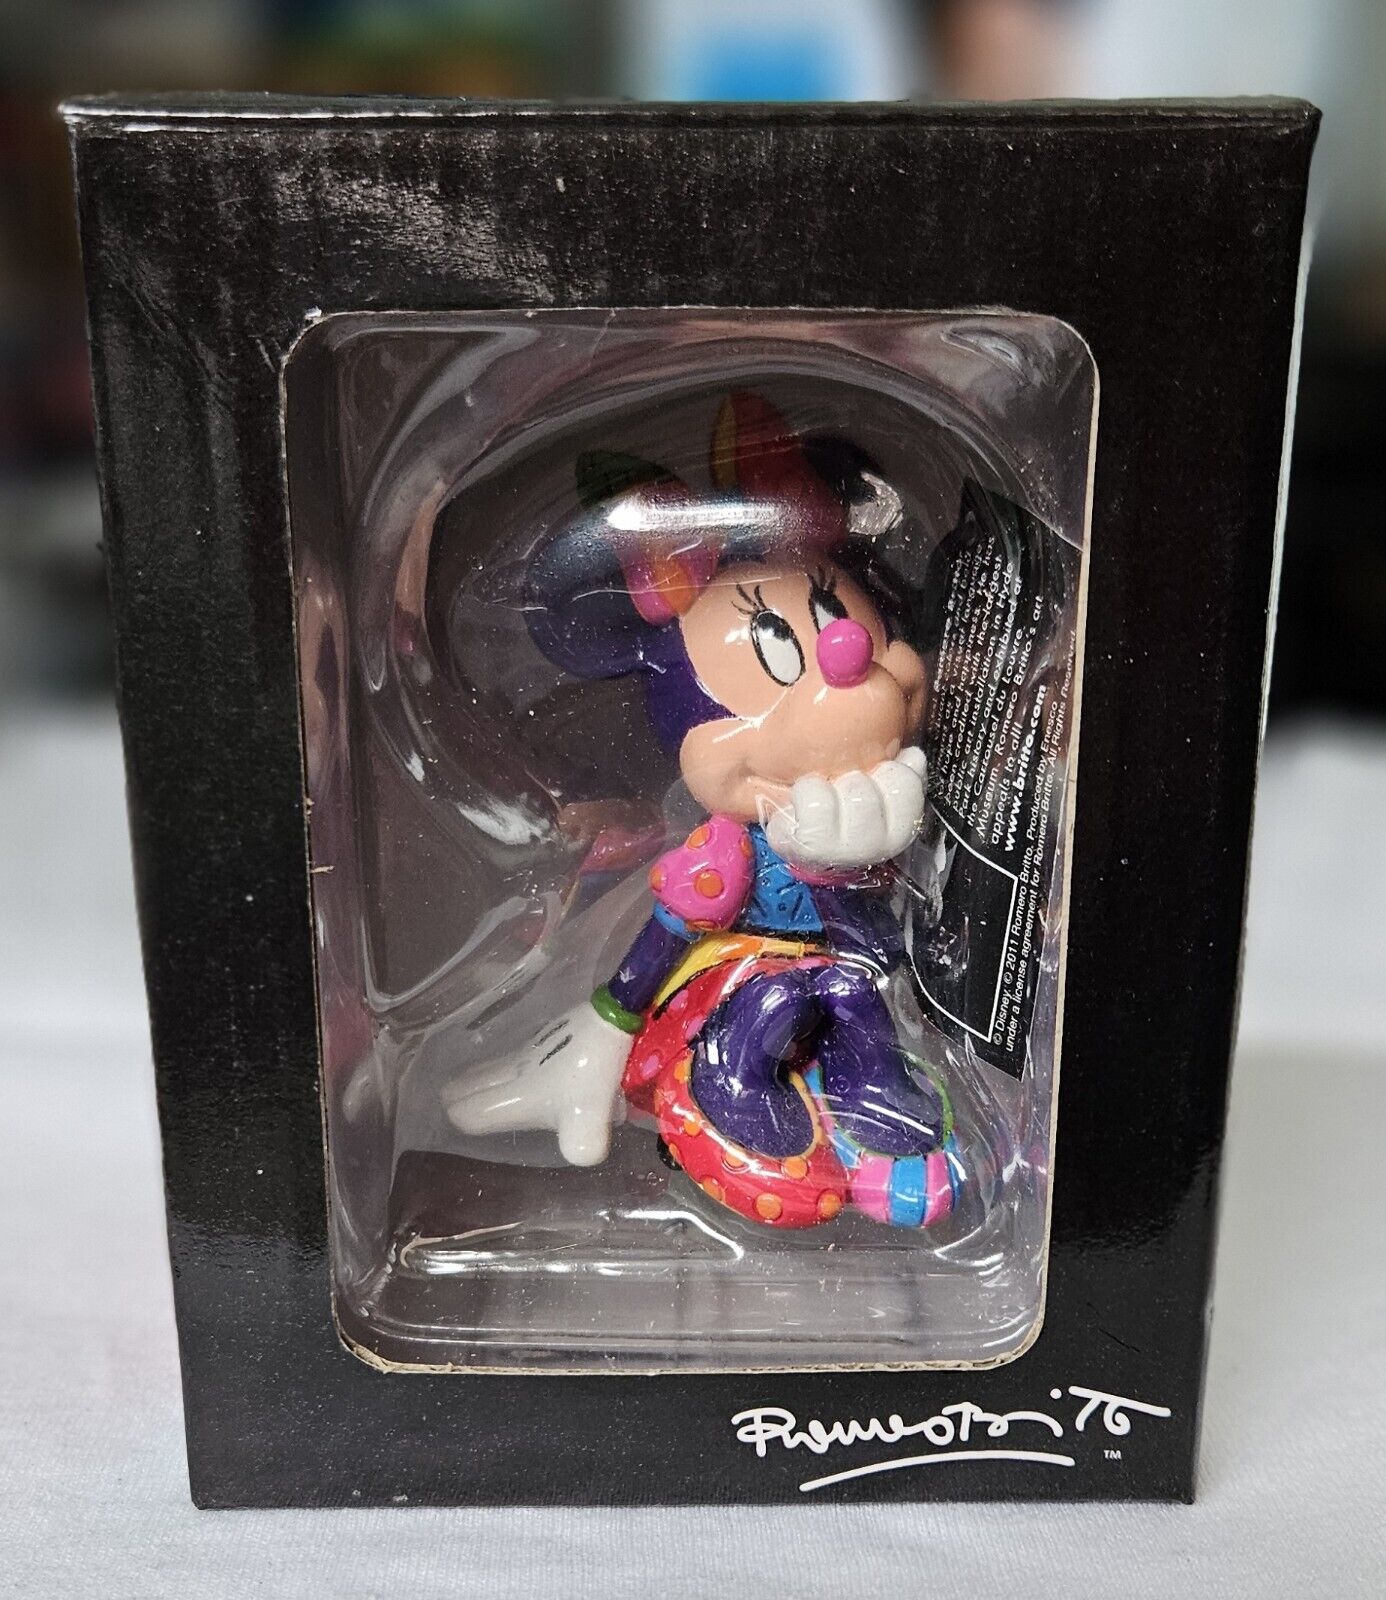 Disney Britto Minnie Mouse Figurine NEW in Box by Pop Artist Romero Britto 